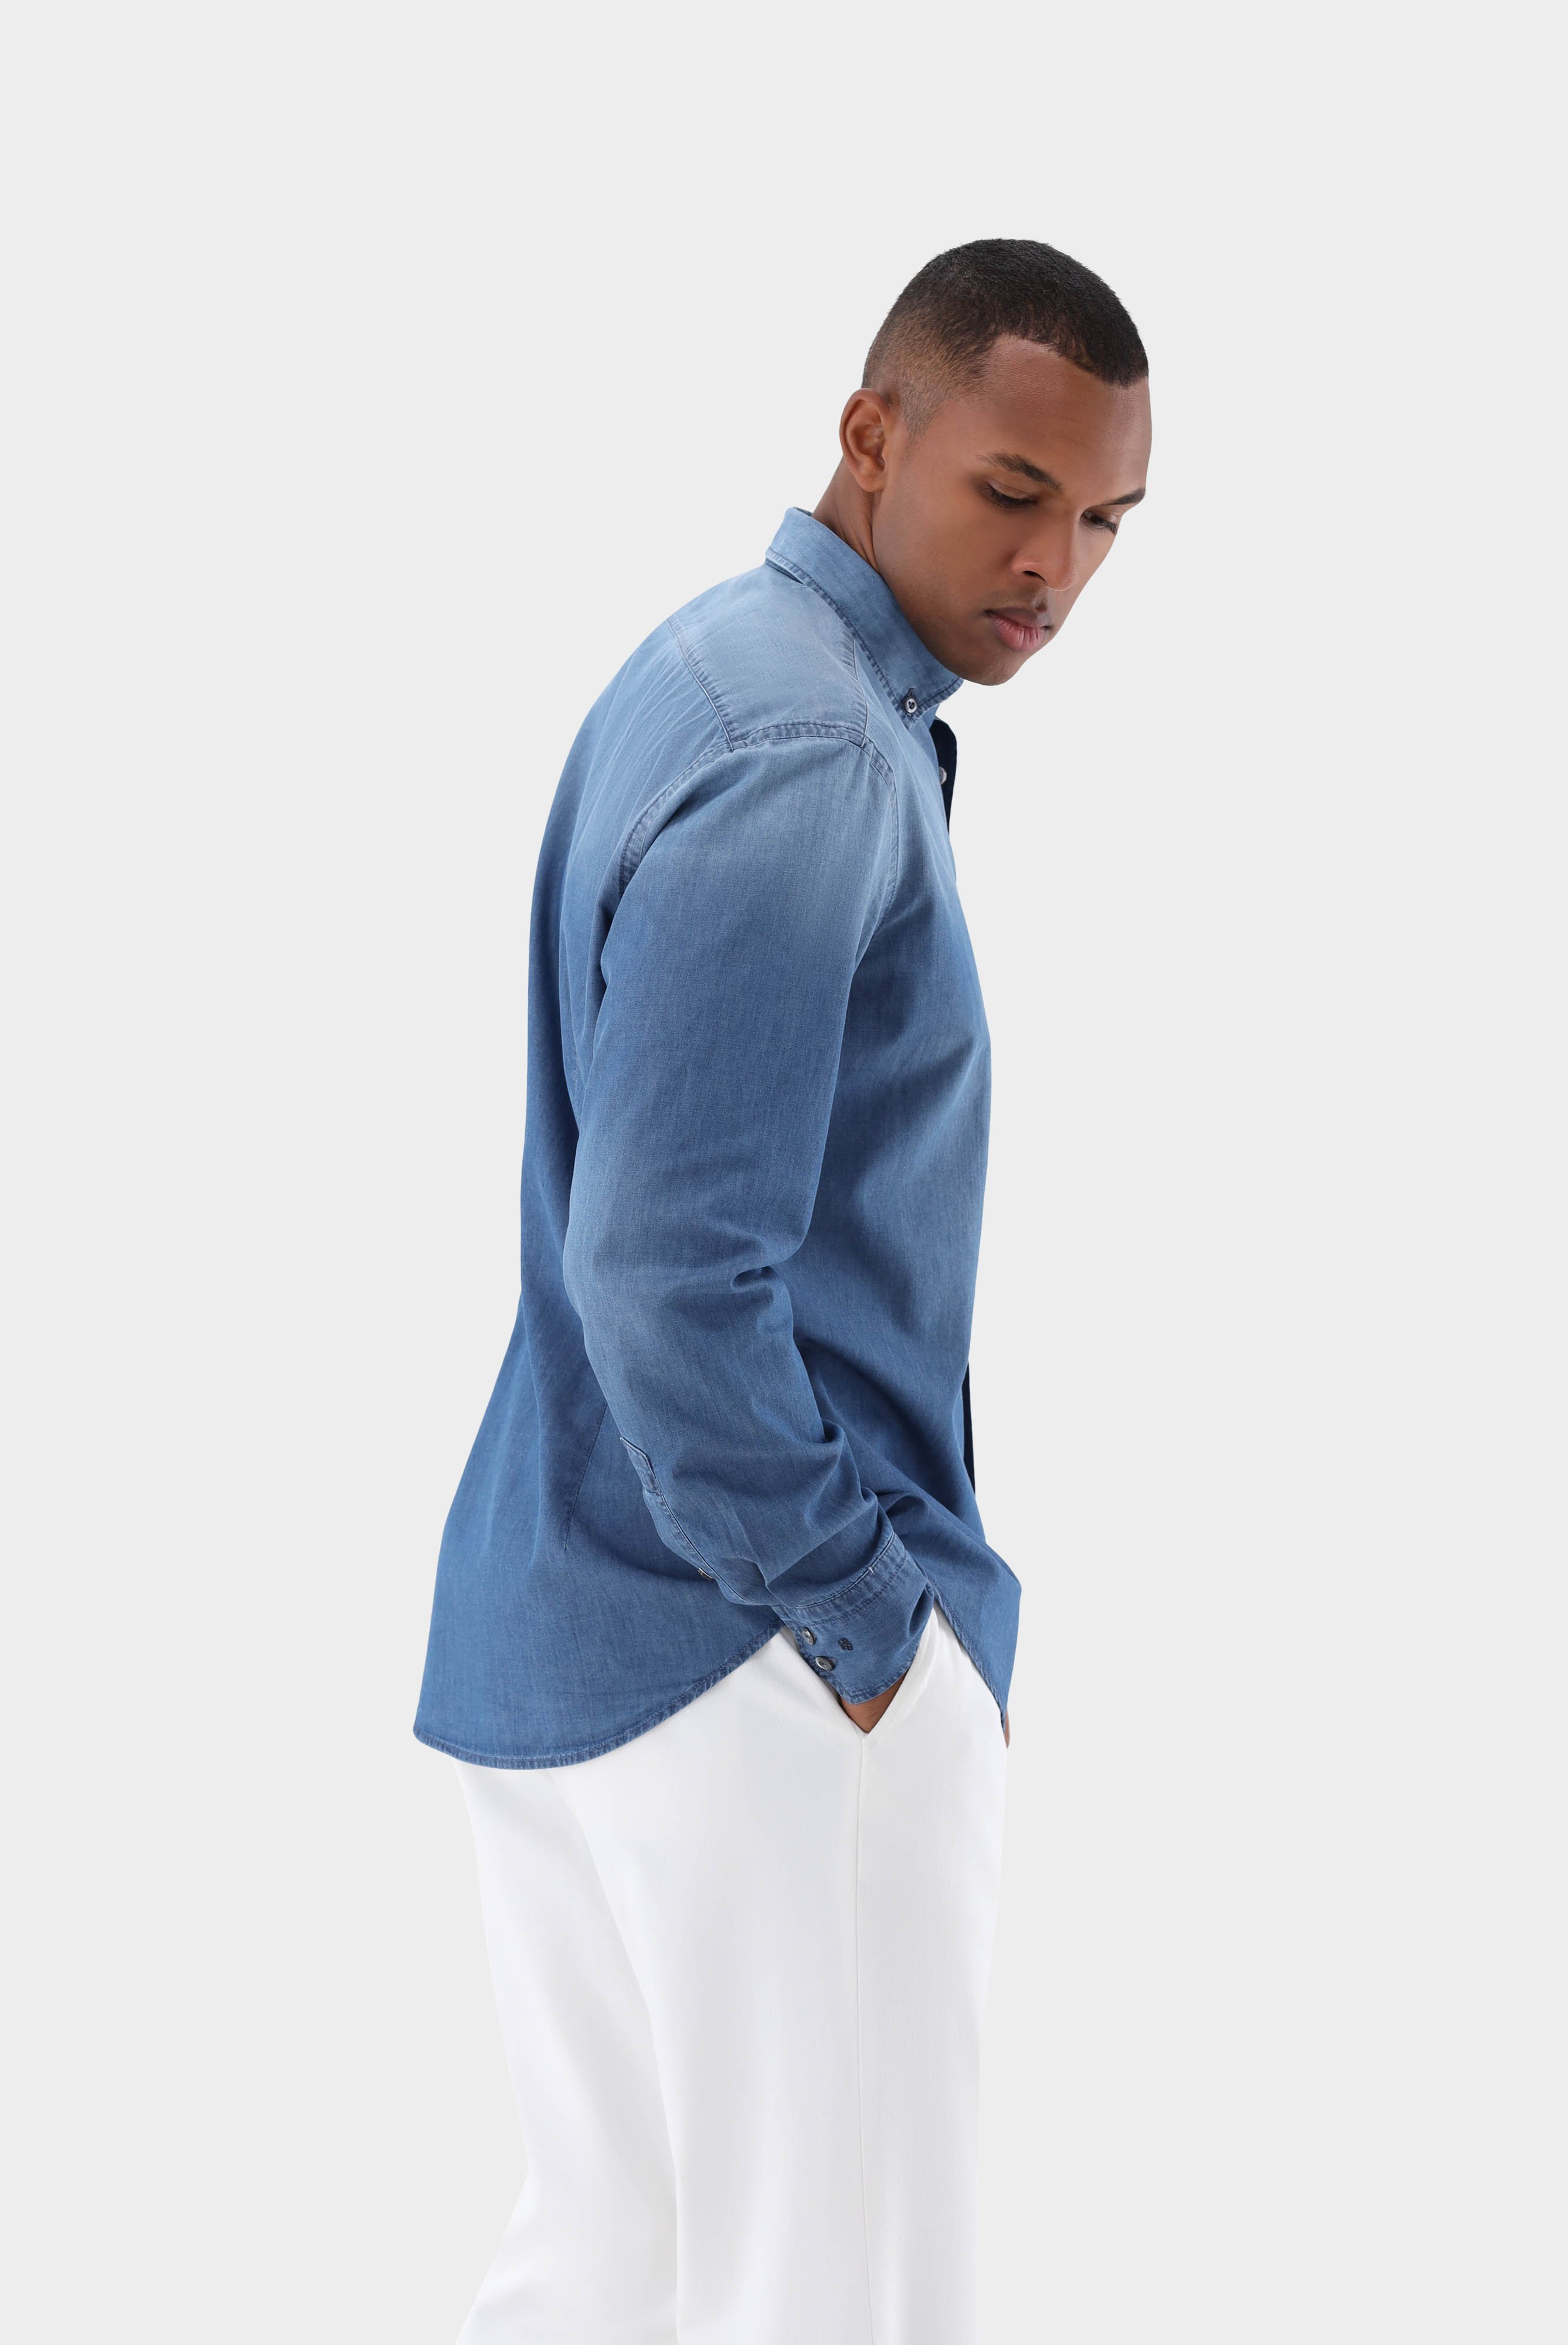 Casual Hemden+Jeans Hemd Tailor Fit+20.2013.ET.155330.740.38